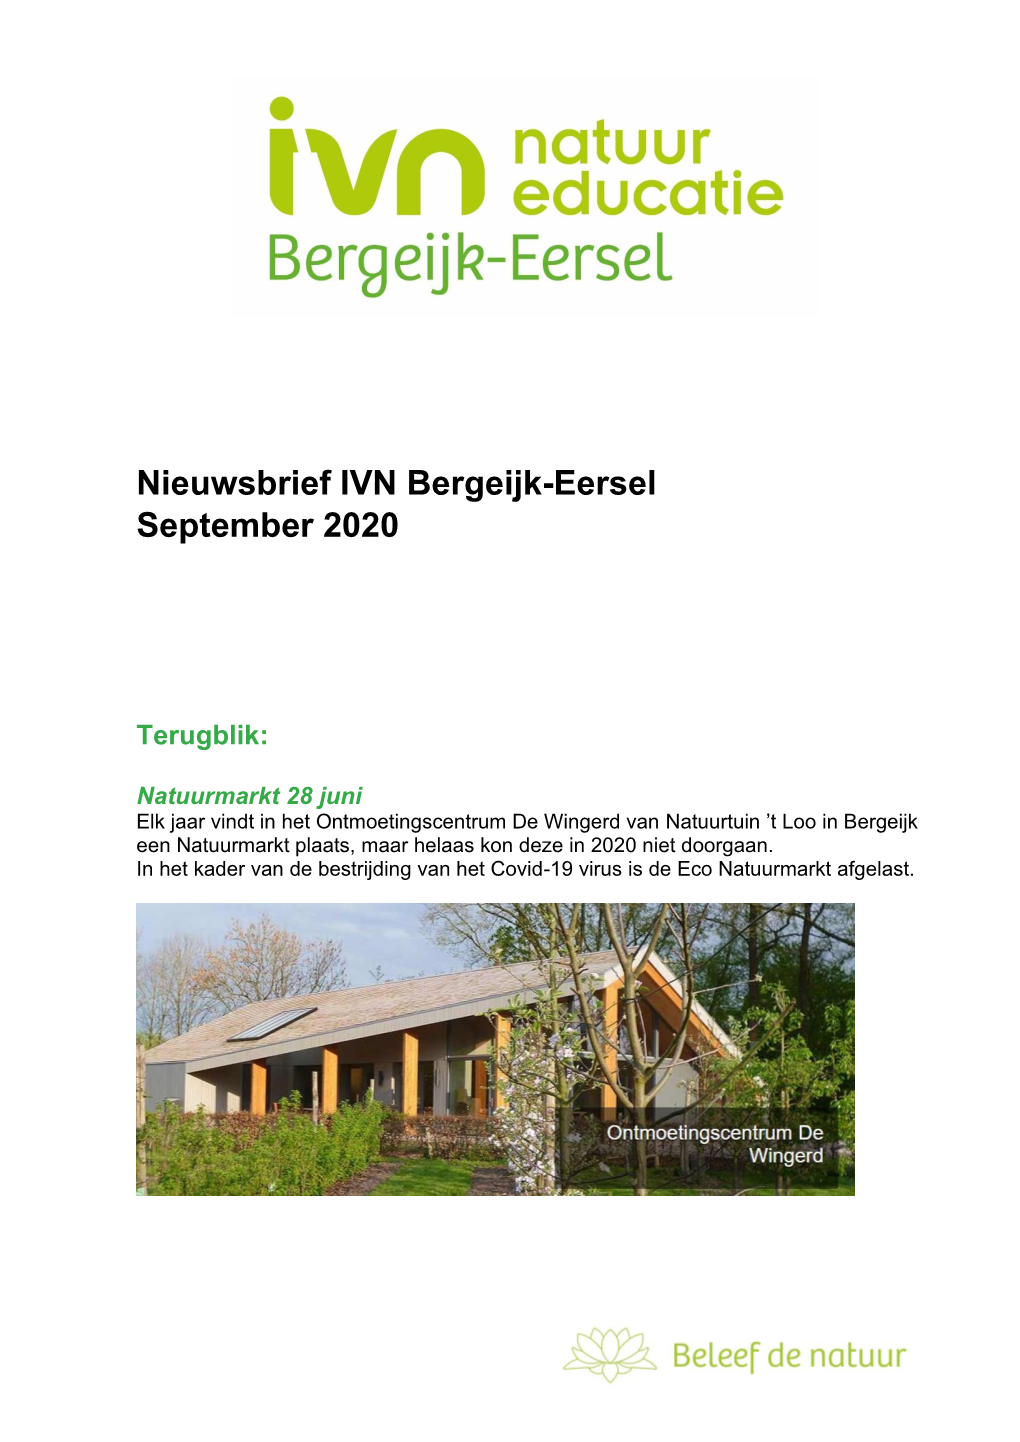 Nieuwsbrief IVN Bergeijk-Eersel September 2020